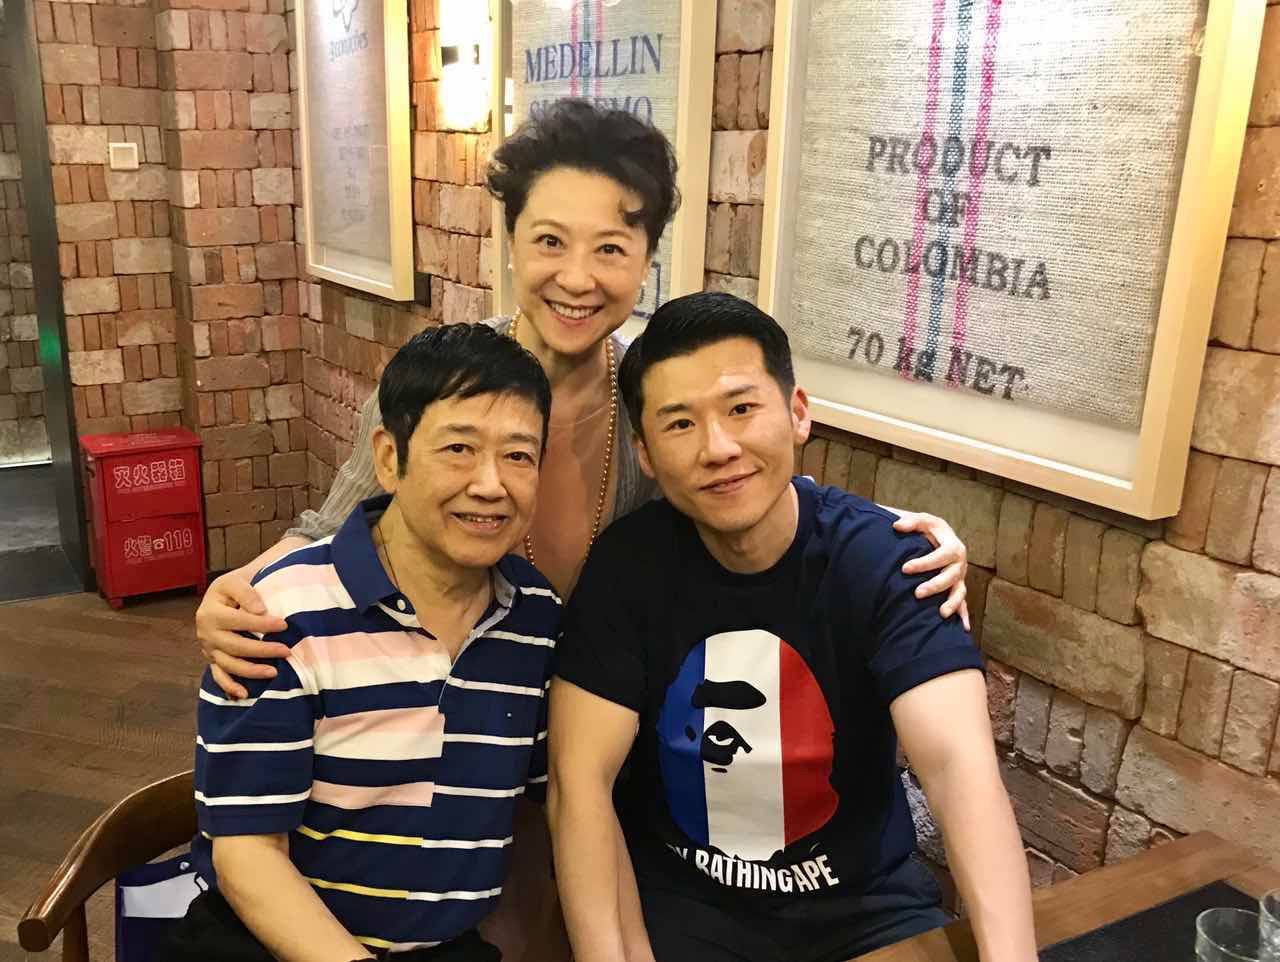 王馥荔的丈夫名叫王群,也是一名演员,导演,夫妇俩育有儿子王骁.